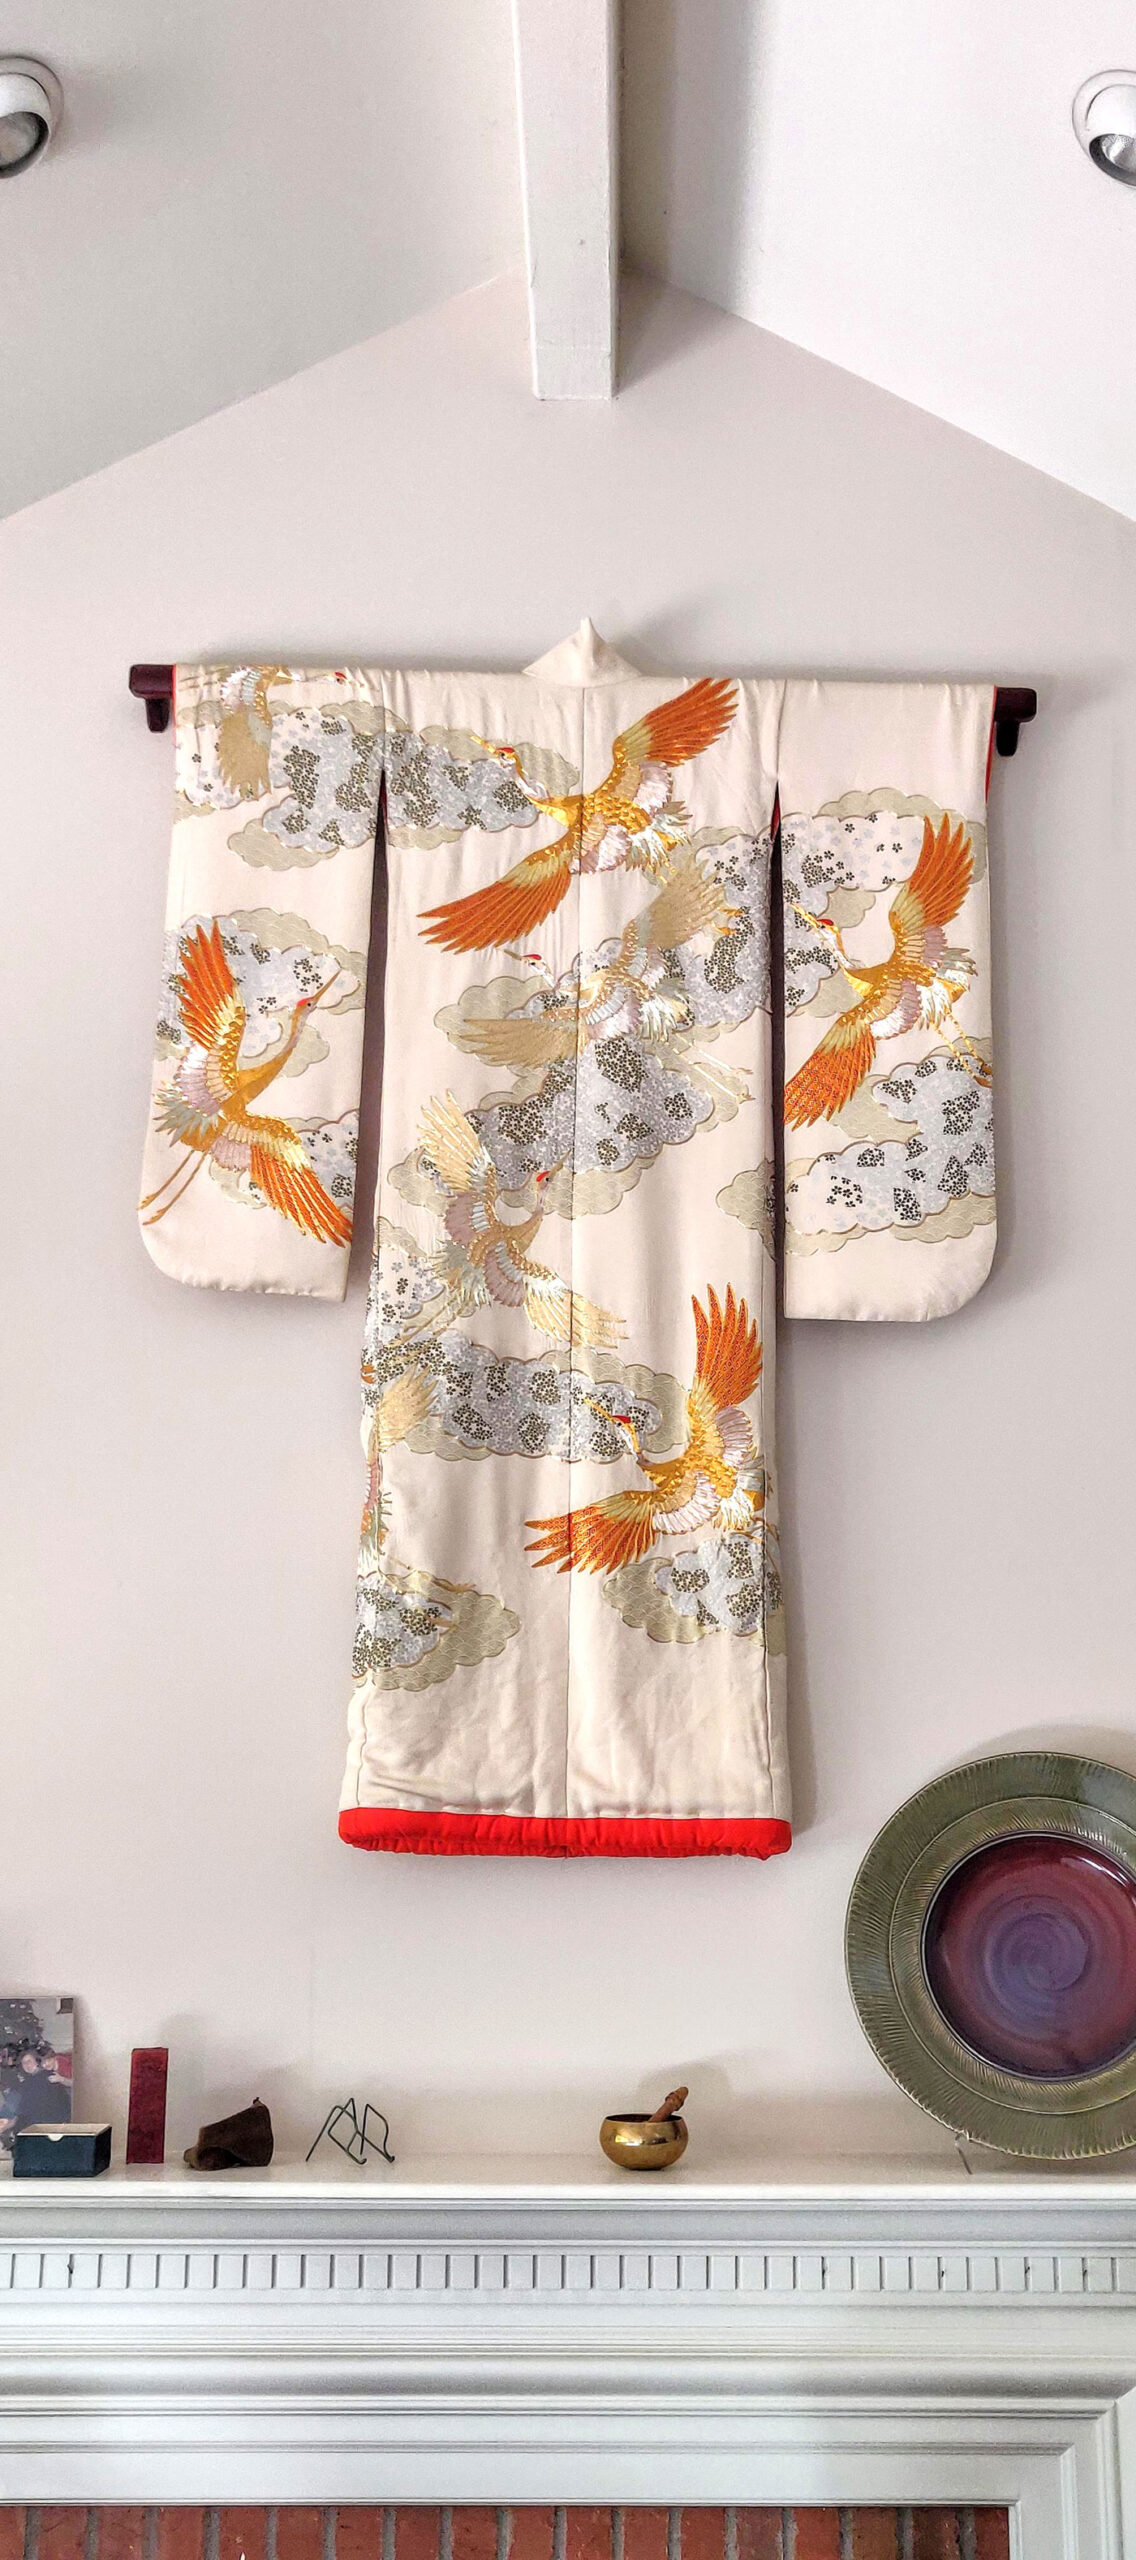 Kimono on display